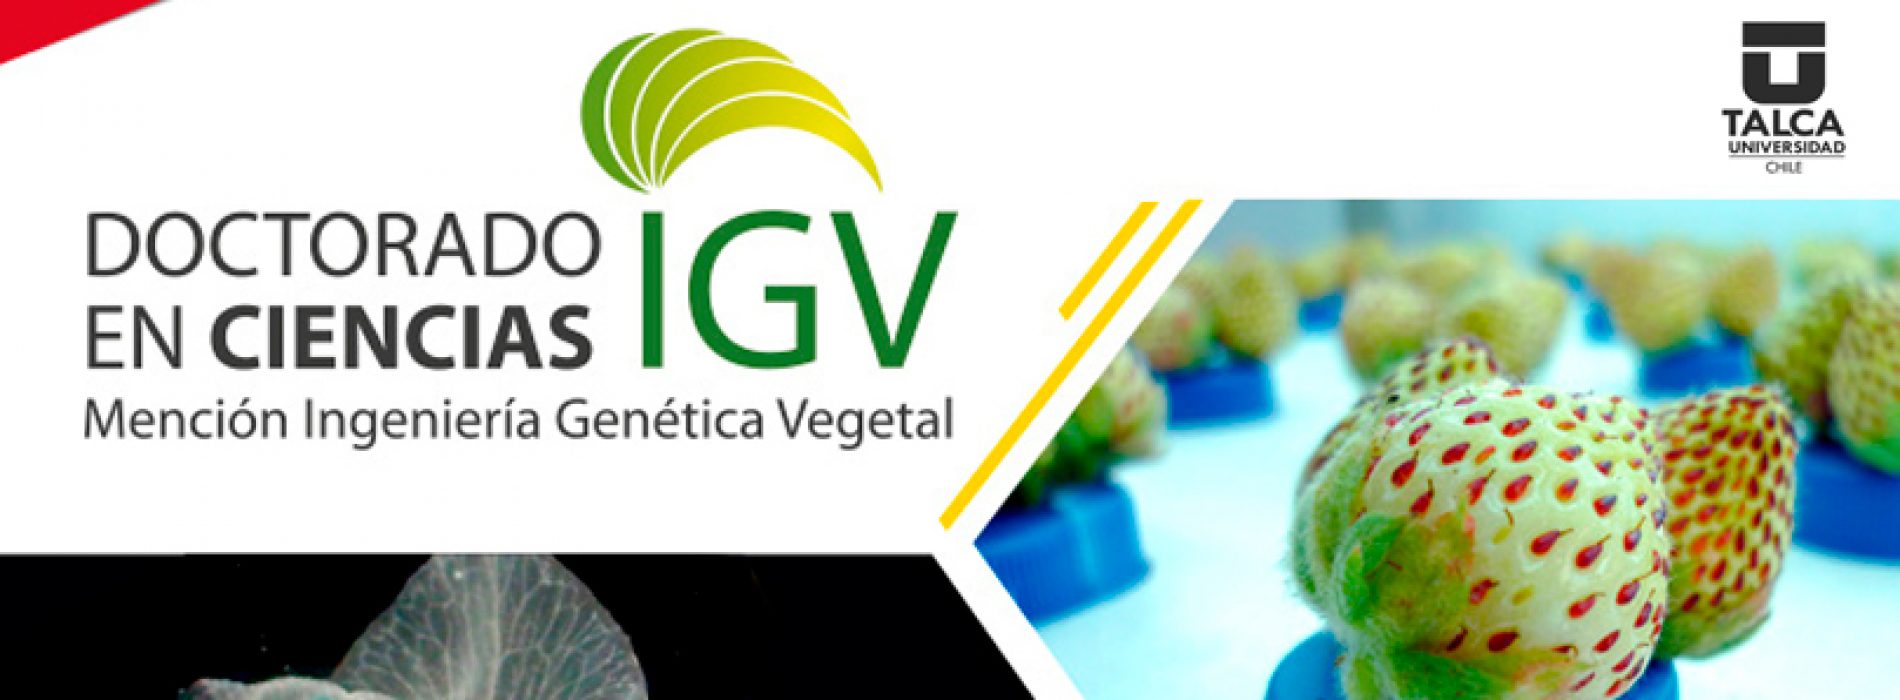 Doctorado en ciencias mención Ingeniería Genética Vegetal – Universidad de Talca